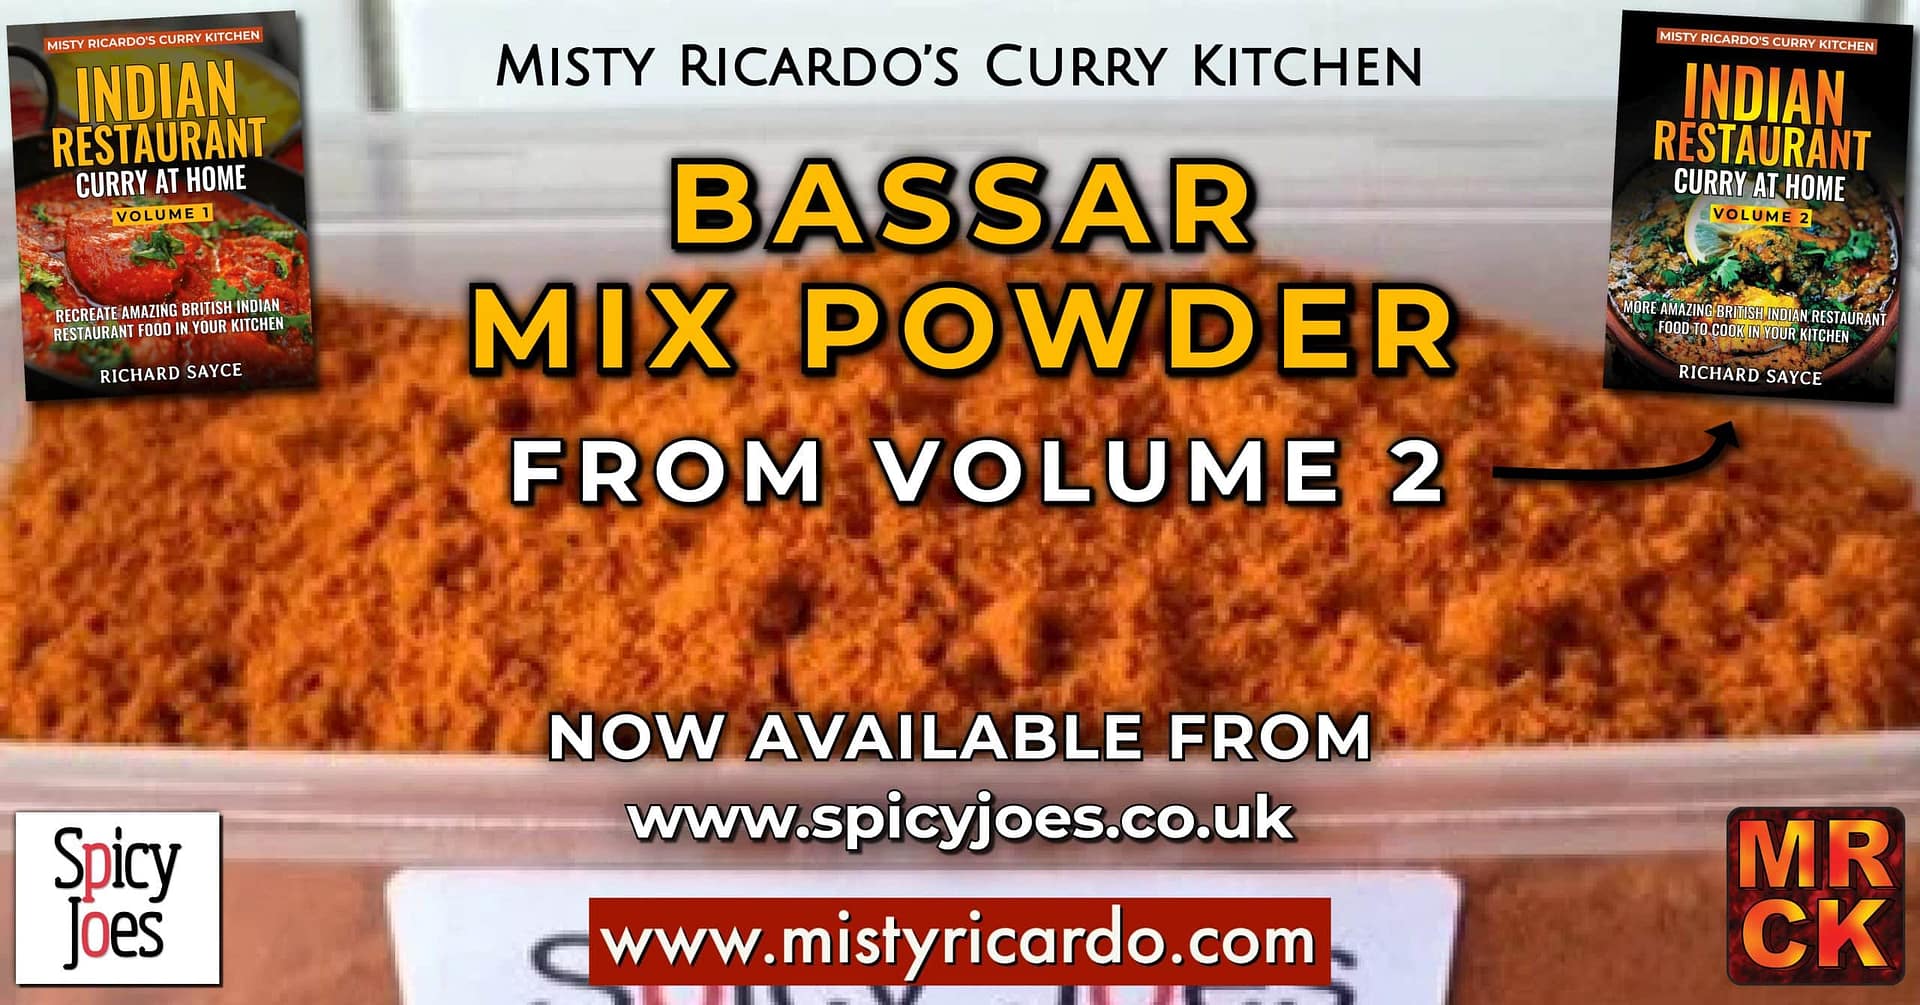 Spicy Joes - Misty Ricardo's Bassar Mix Powder